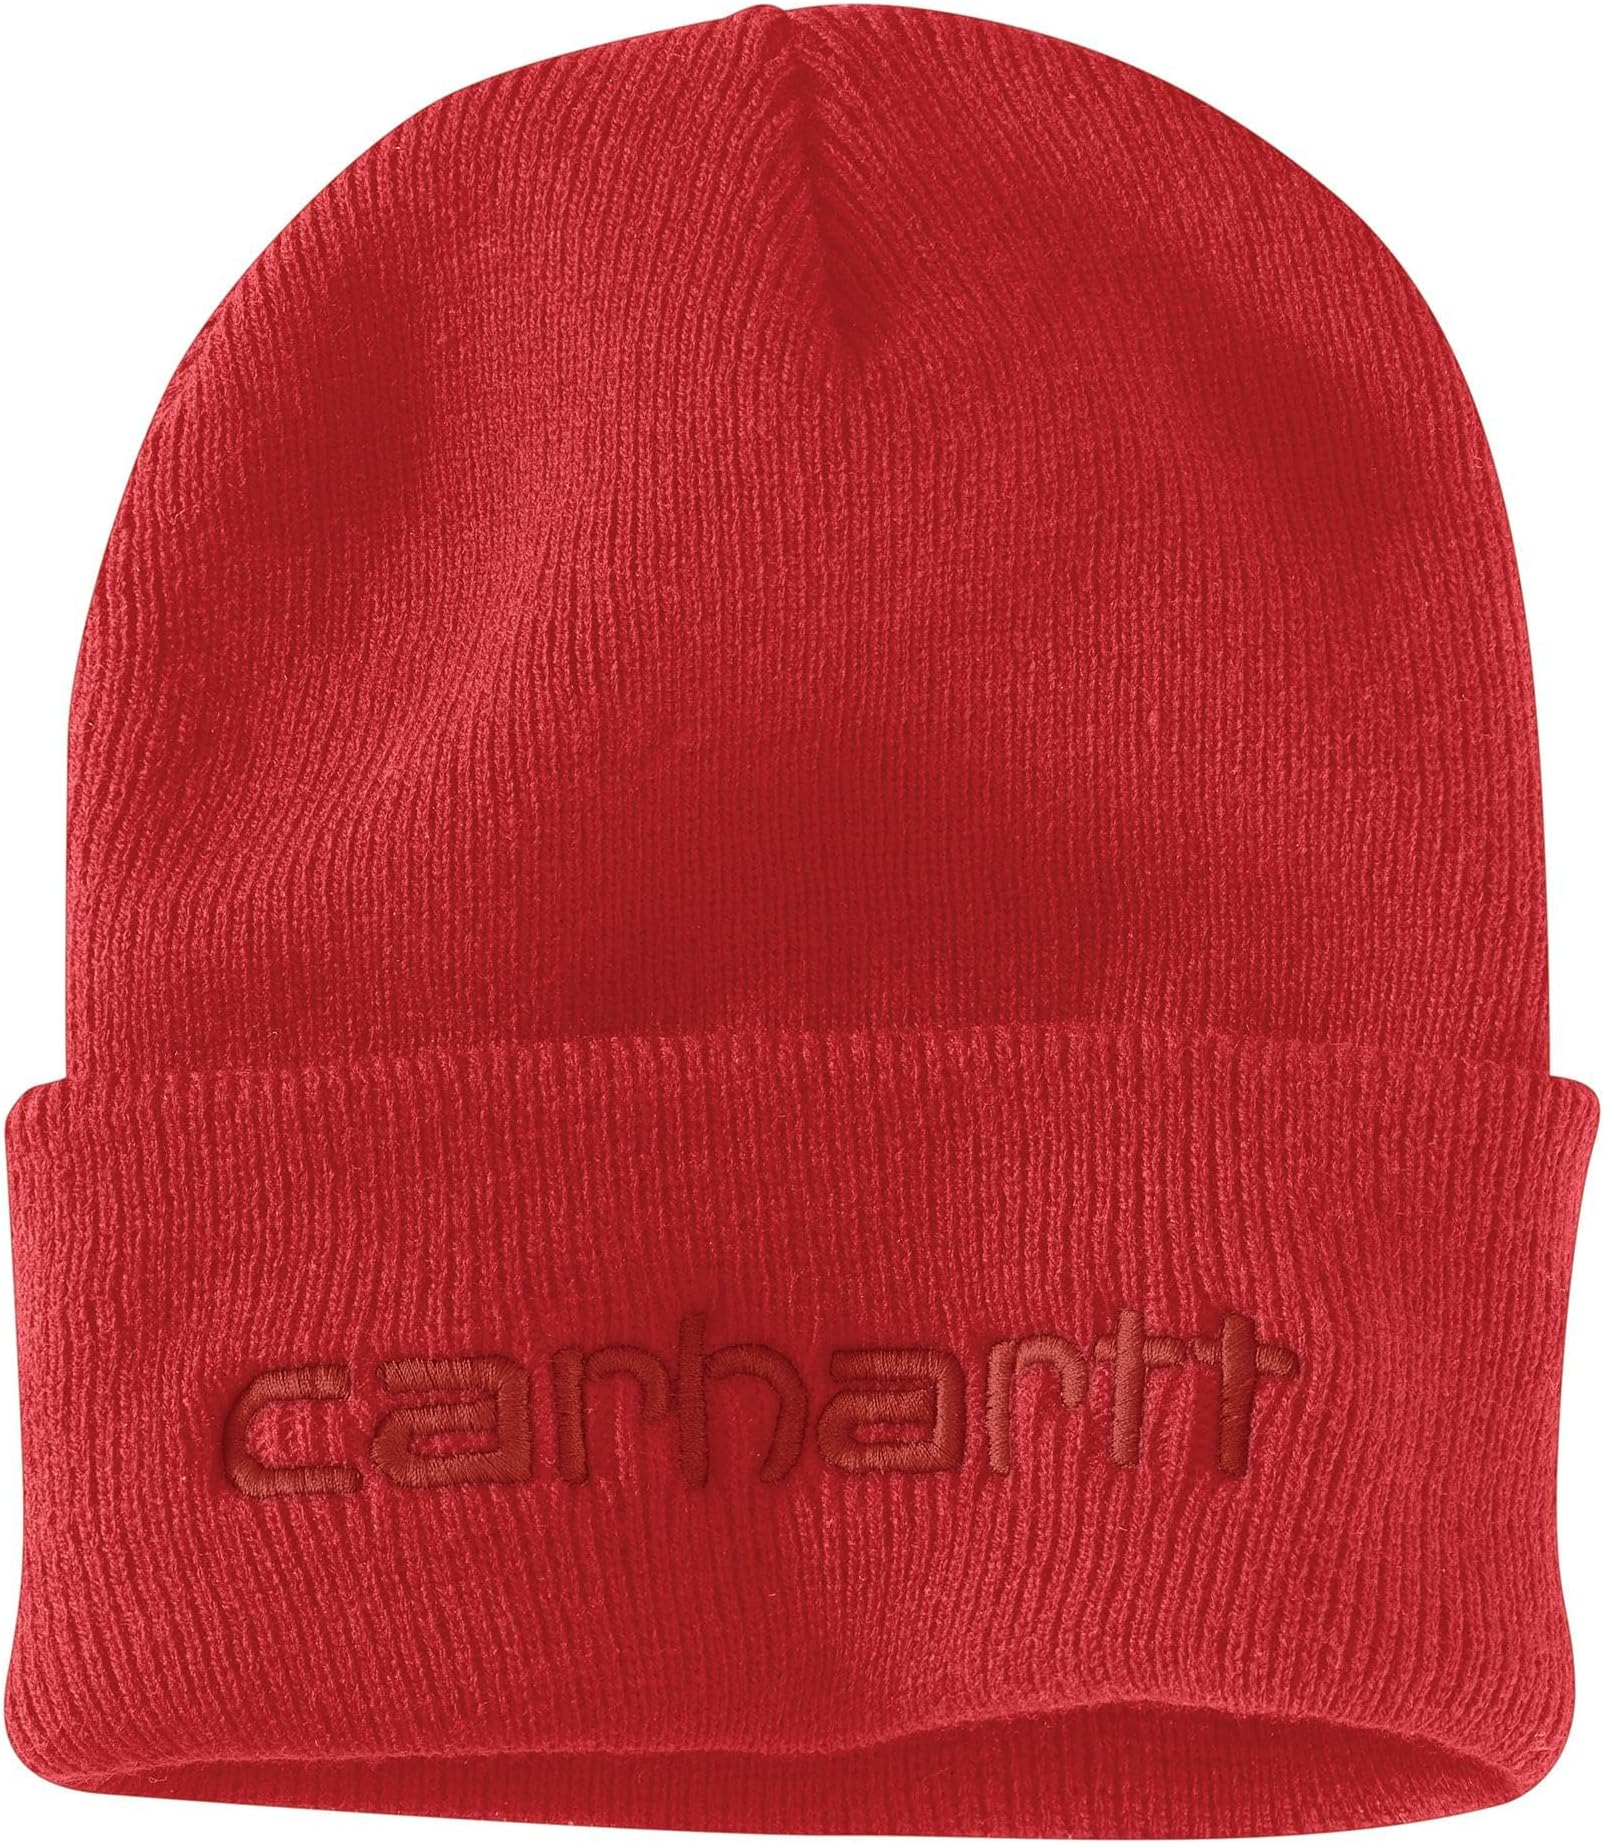 Вязаная утепленная шапка с логотипом и графическим манжетом Carhartt, цвет Red Barn alltimers barn it